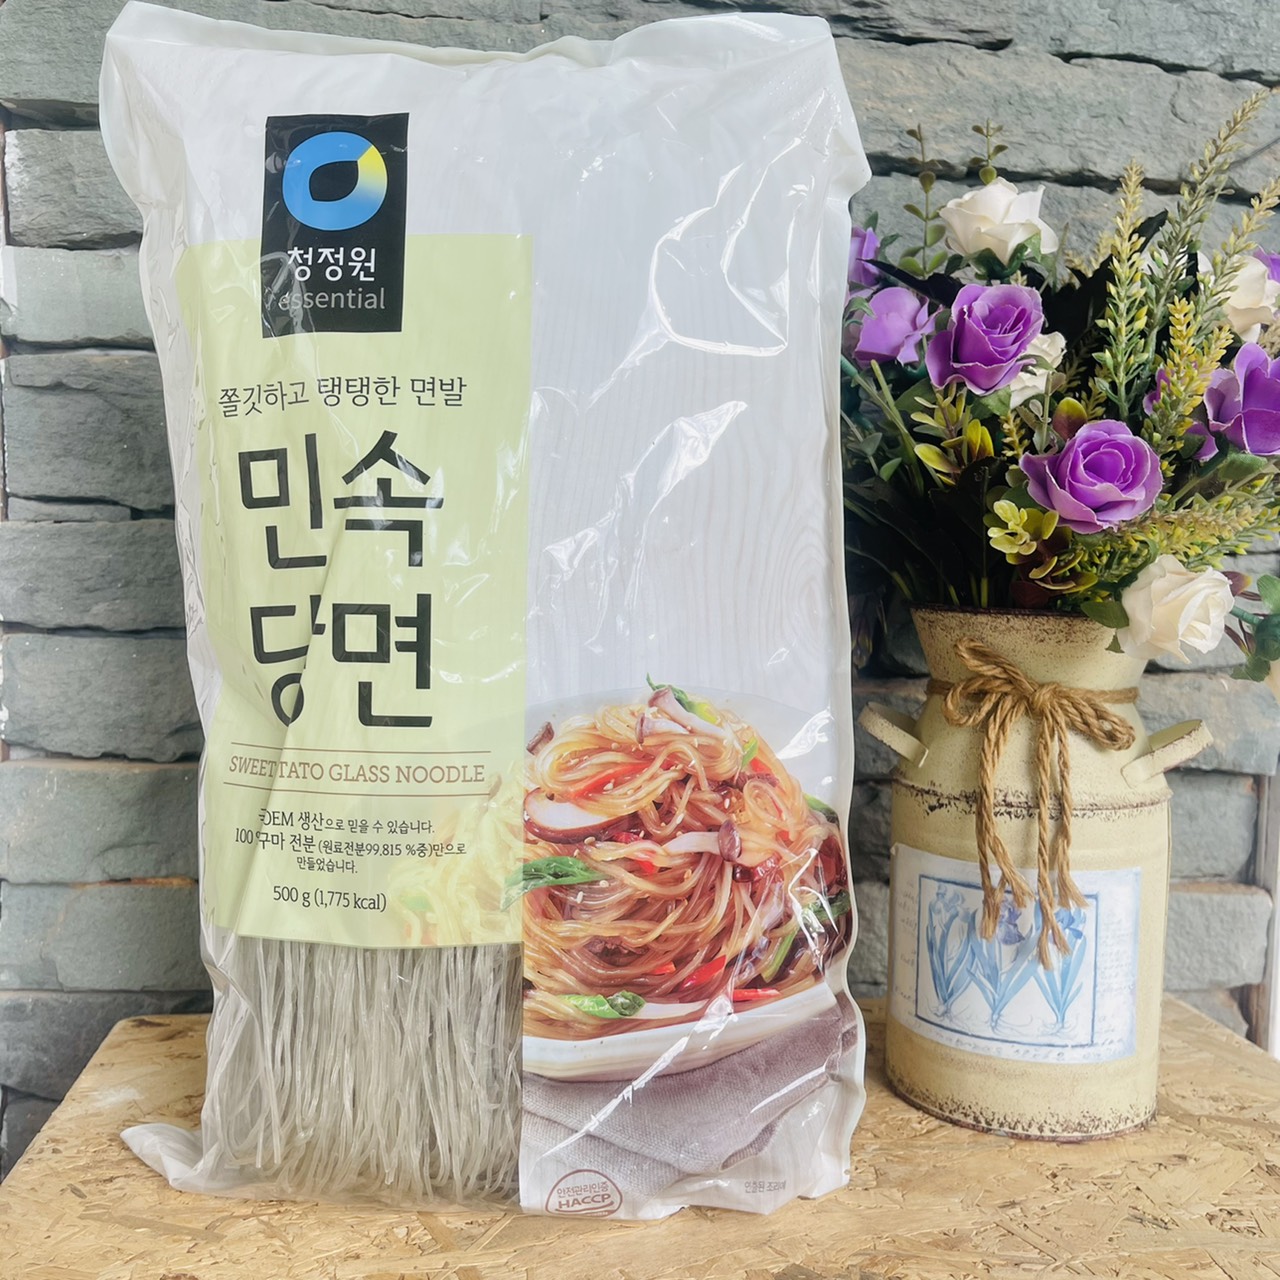 วุ้นเส้นเกาหลี ยำวุ้นเส้น ยำวุ้นเส้นเกาหลี วุ้นเส้น จับเช บูลโกกิ ตราชองจองวอน สวีท โปเตโต้ กลาส นู้ดเดิ้ล Sweet Potato Glass Noodle  500ก.